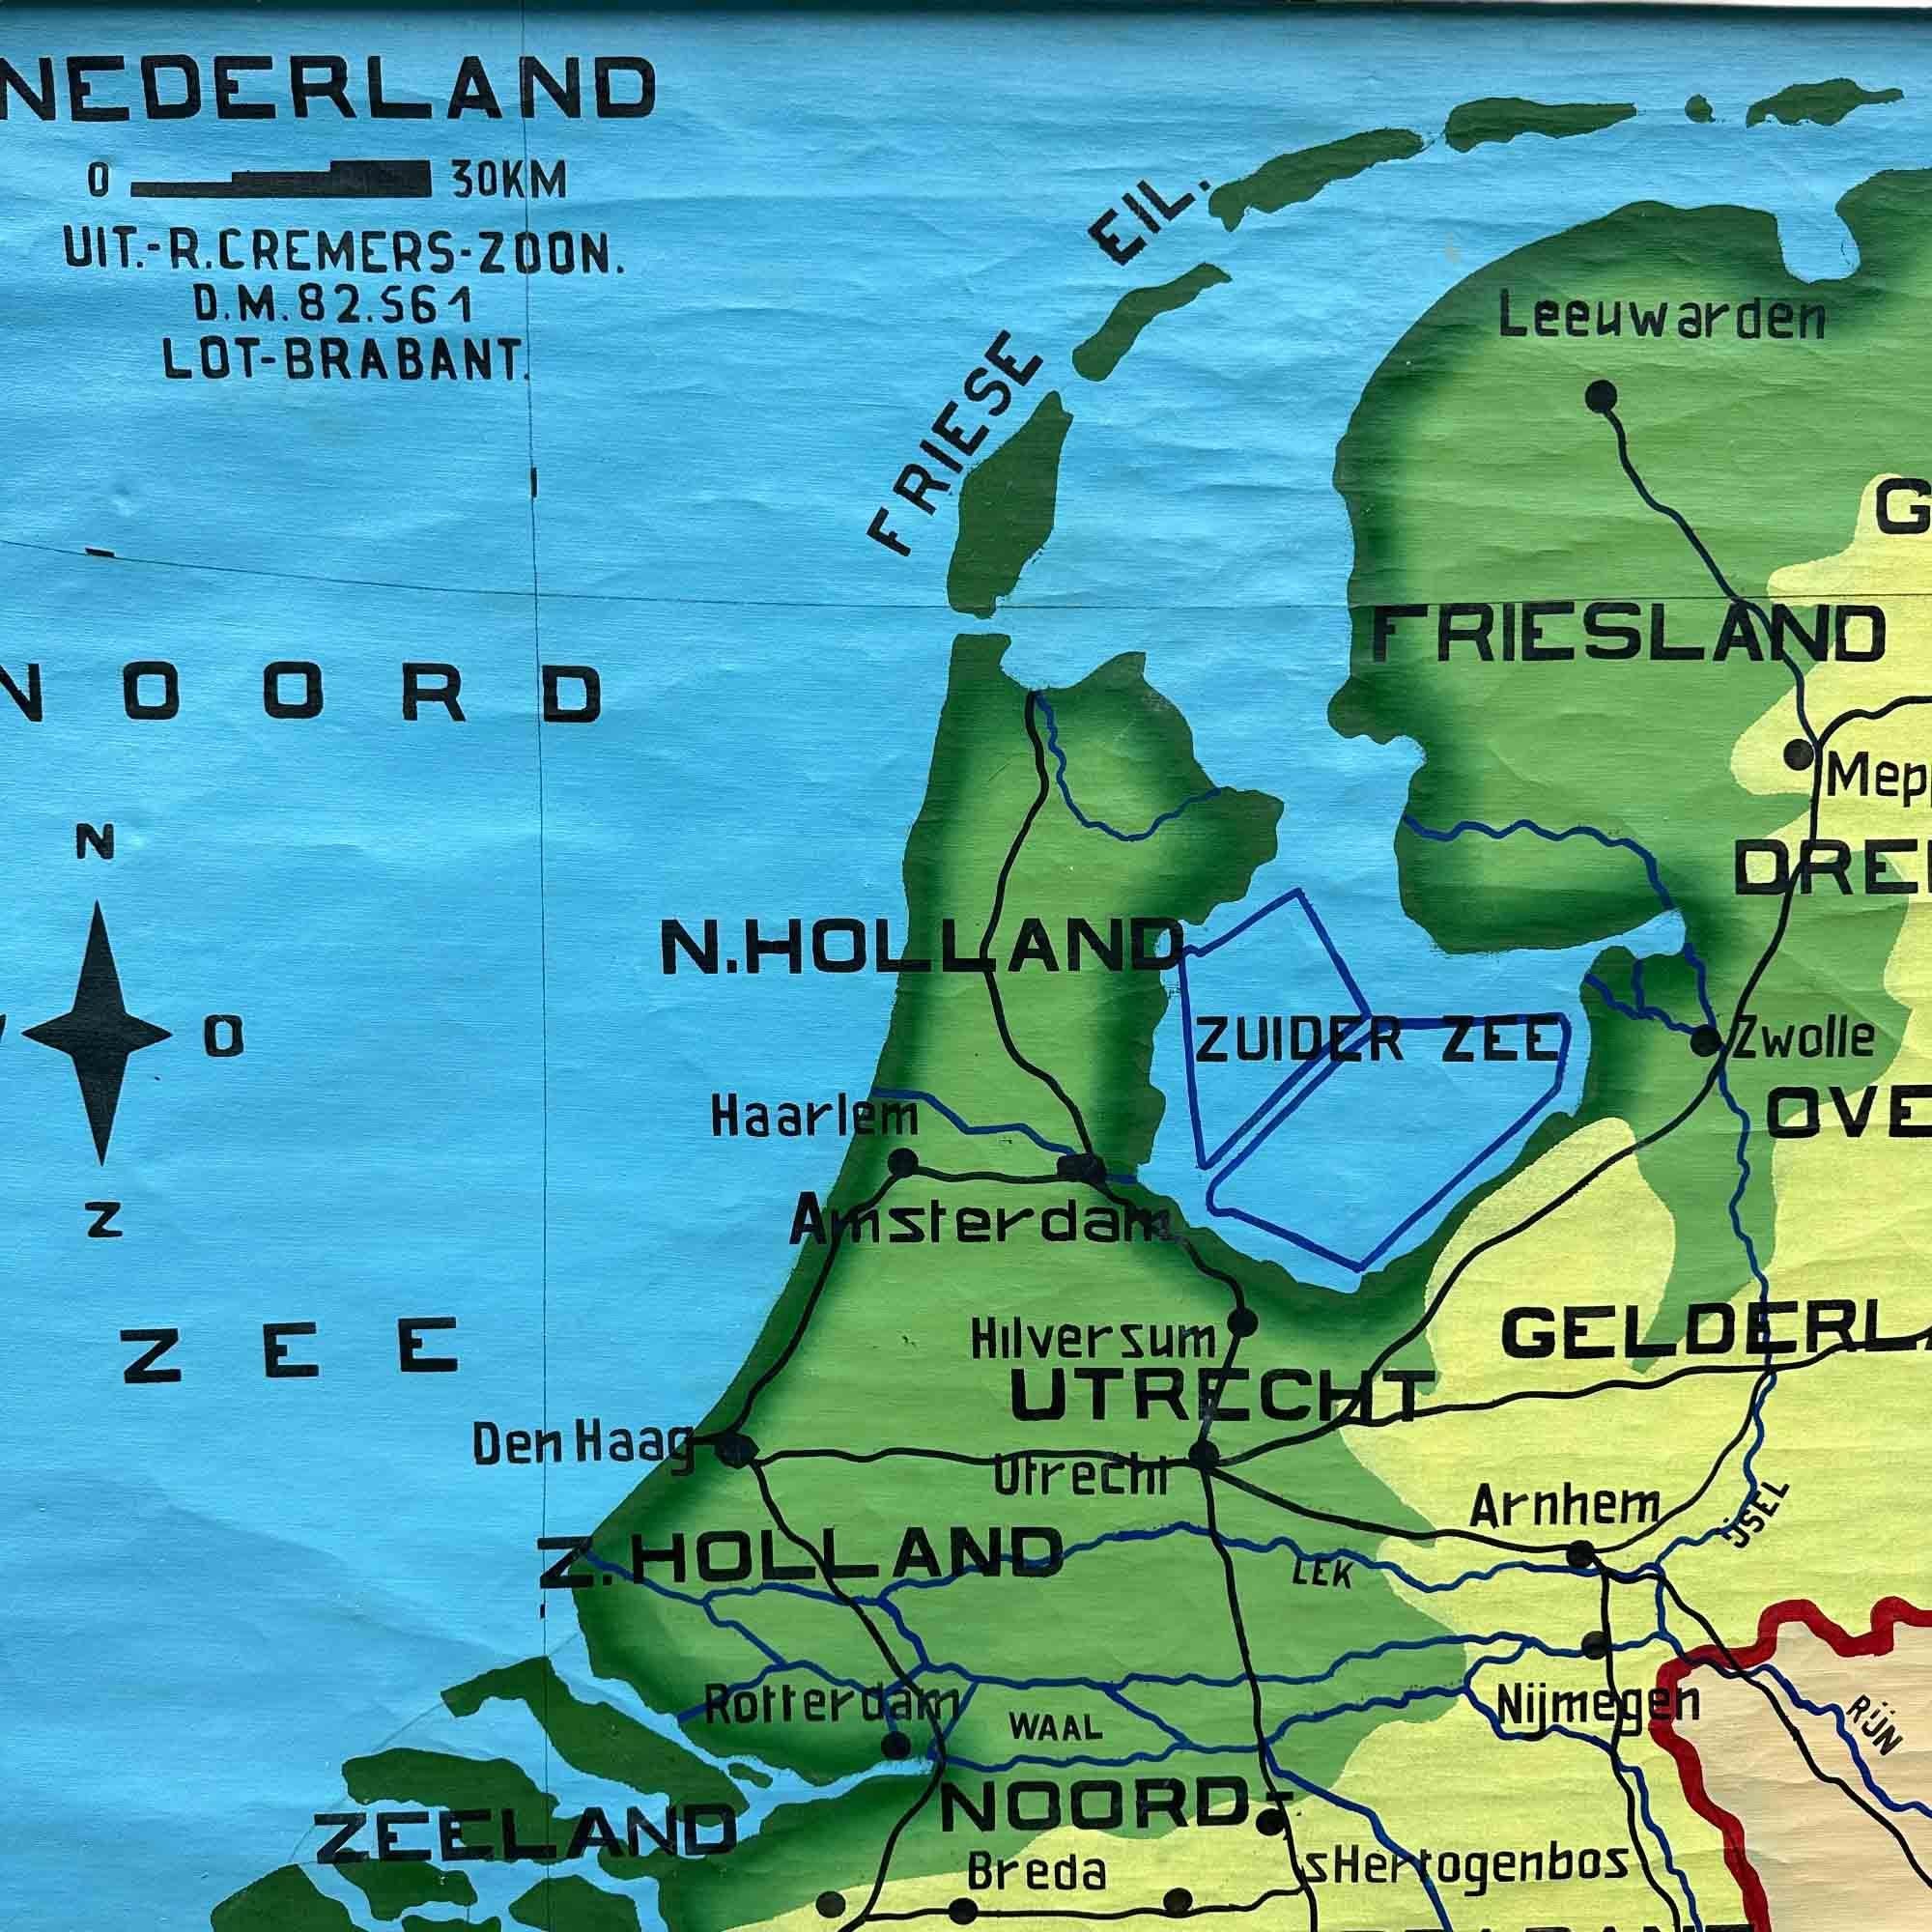 Eine schöne alte Schulkarte der Niederlande, auf Leinen gemalt. Die Karte zeigt die 3 verschiedenen Reliefs (niedrig, mittel, hoch) der Niederlande. Die schönen Farben geben dieser Schulkarte einen farbenfrohen Touch für Ihr Interieur. Der Text ist